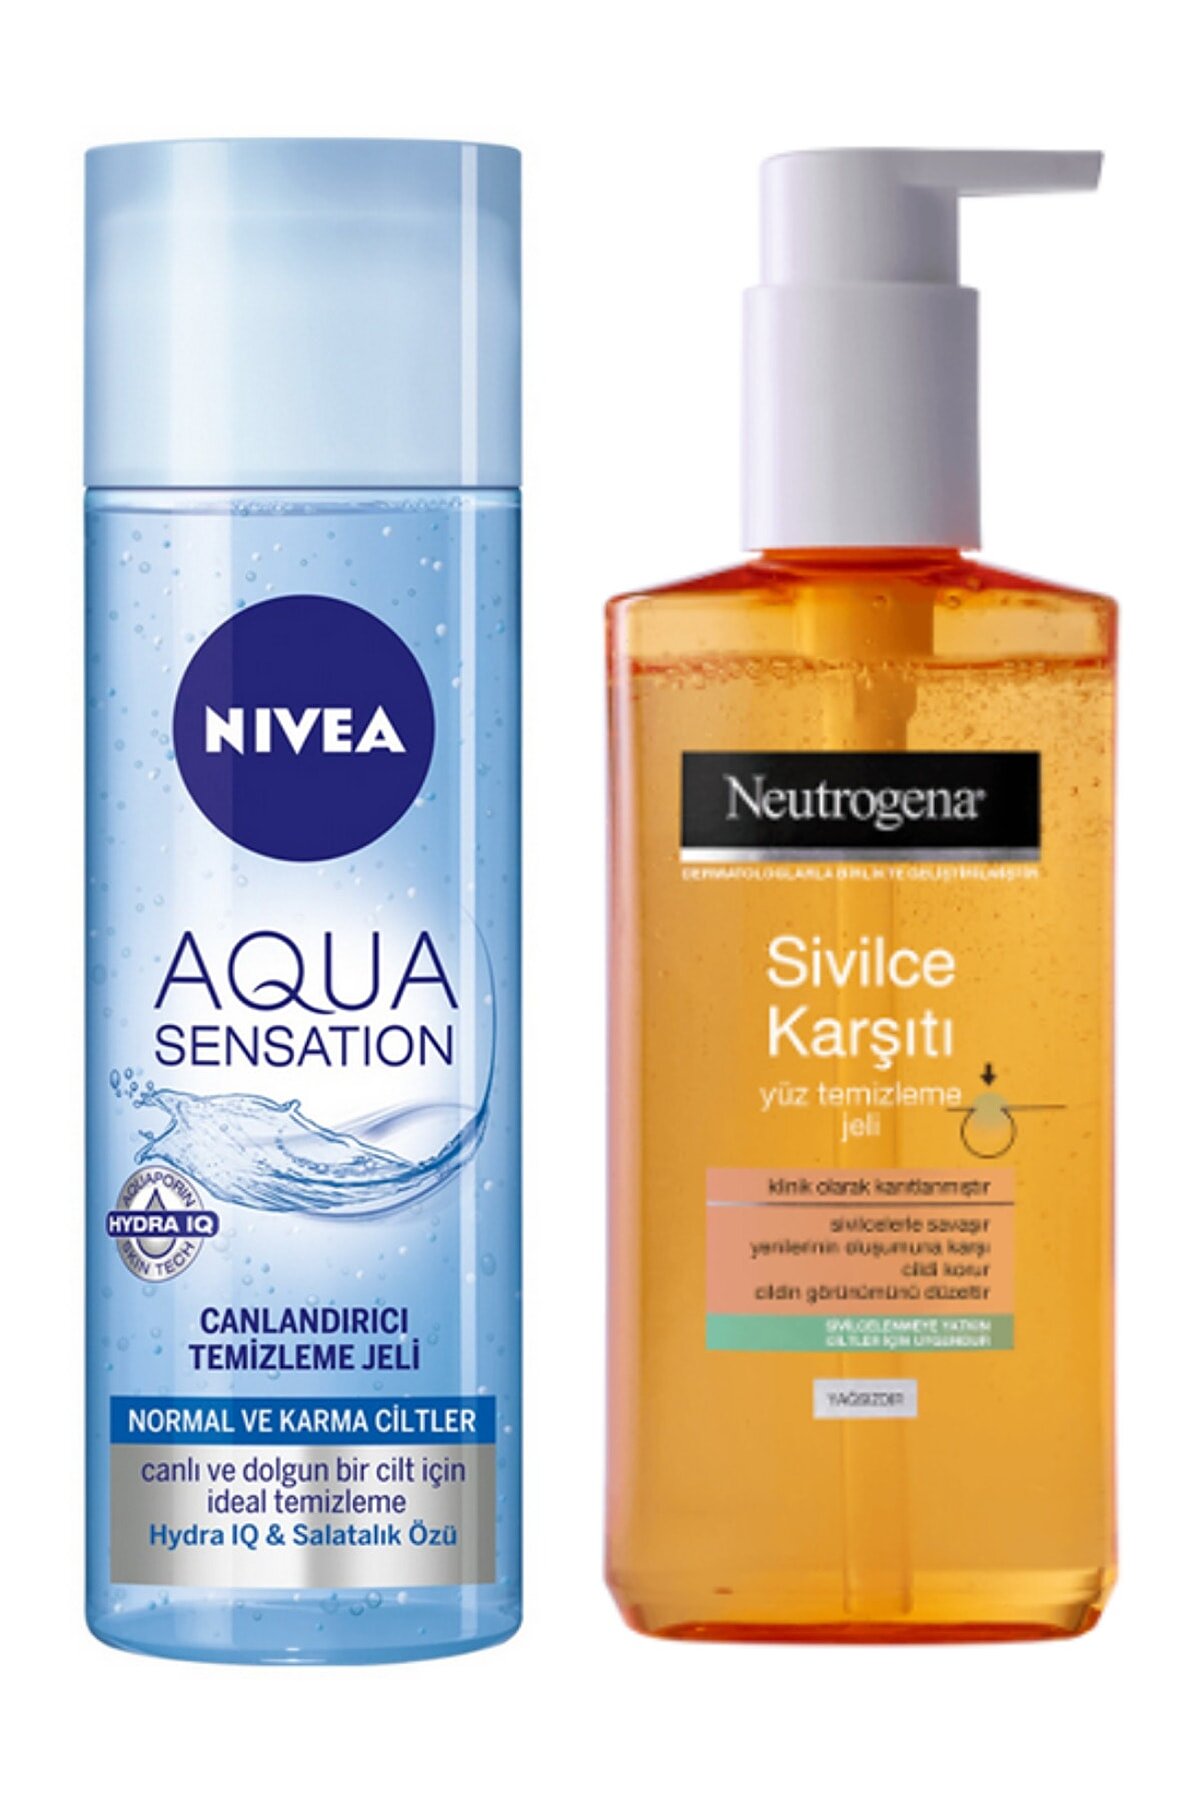 NIVEA Aqua Canlandırıcı Temizleme Jeli 200ml ve Neutrogena Sivilce Karşıtı Yüz Temizleme Jeli 200 ml